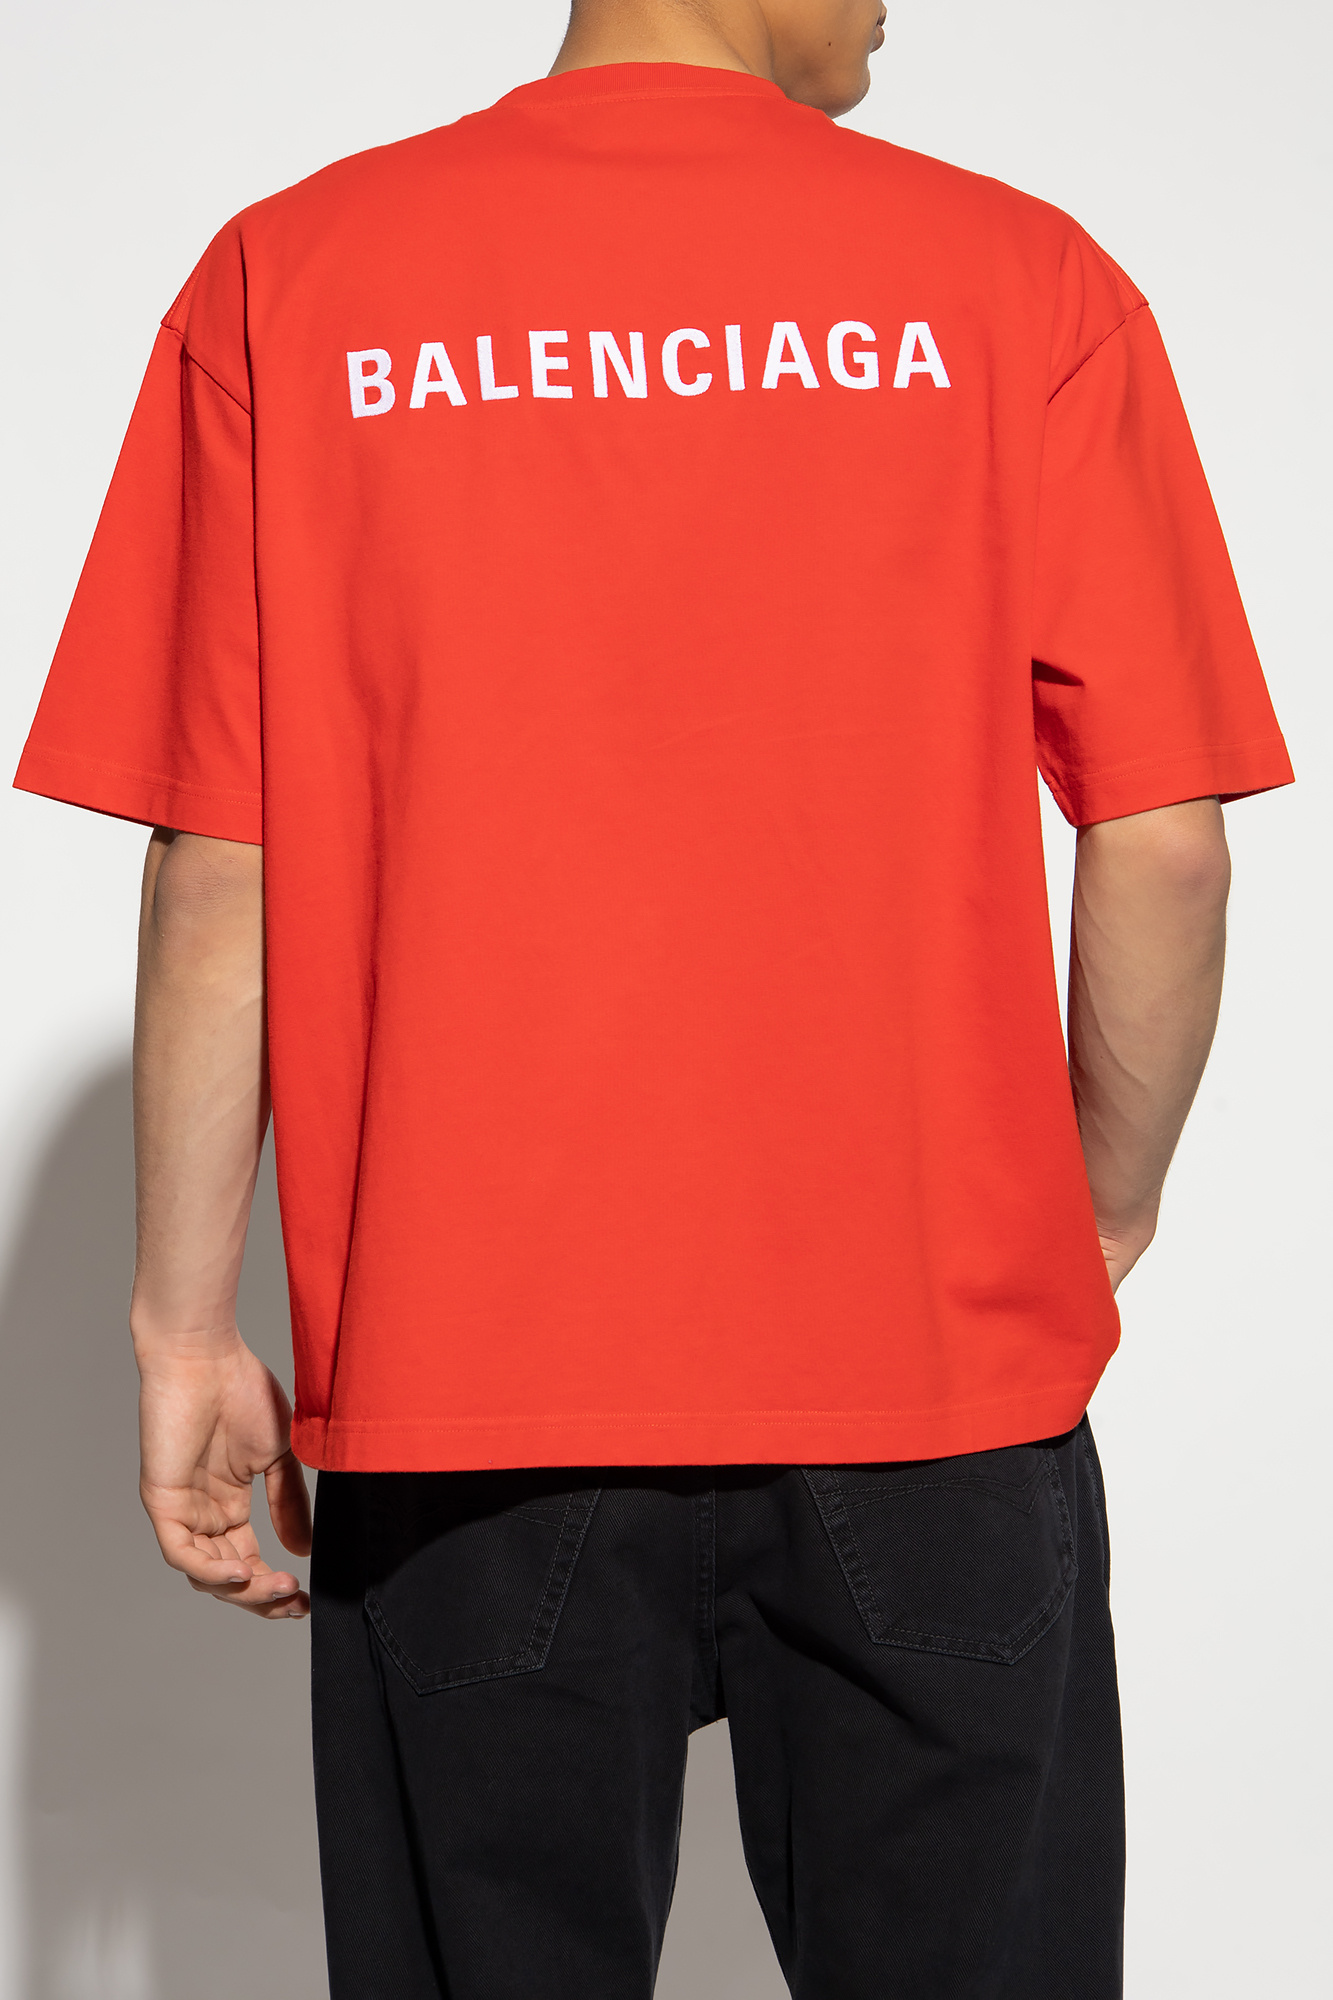 Balenciaga T-shirt with logo, Men's Clothing